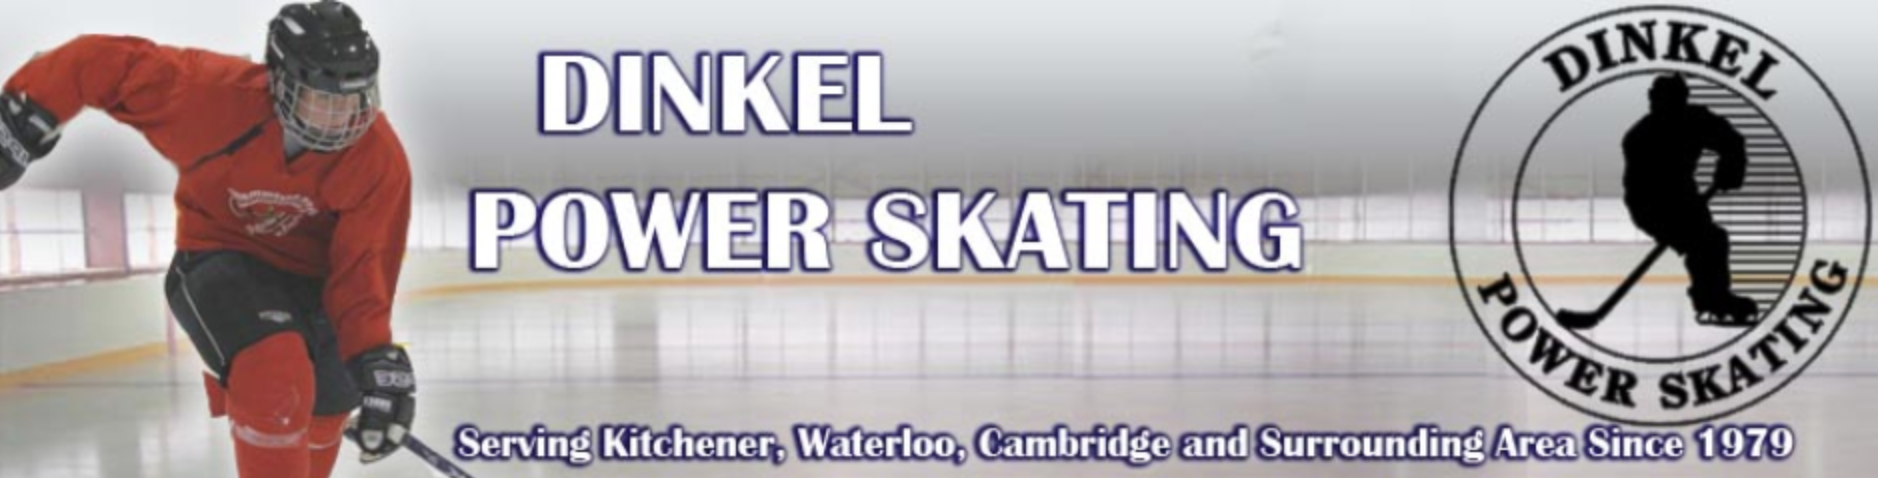 Dinkel Power Skating